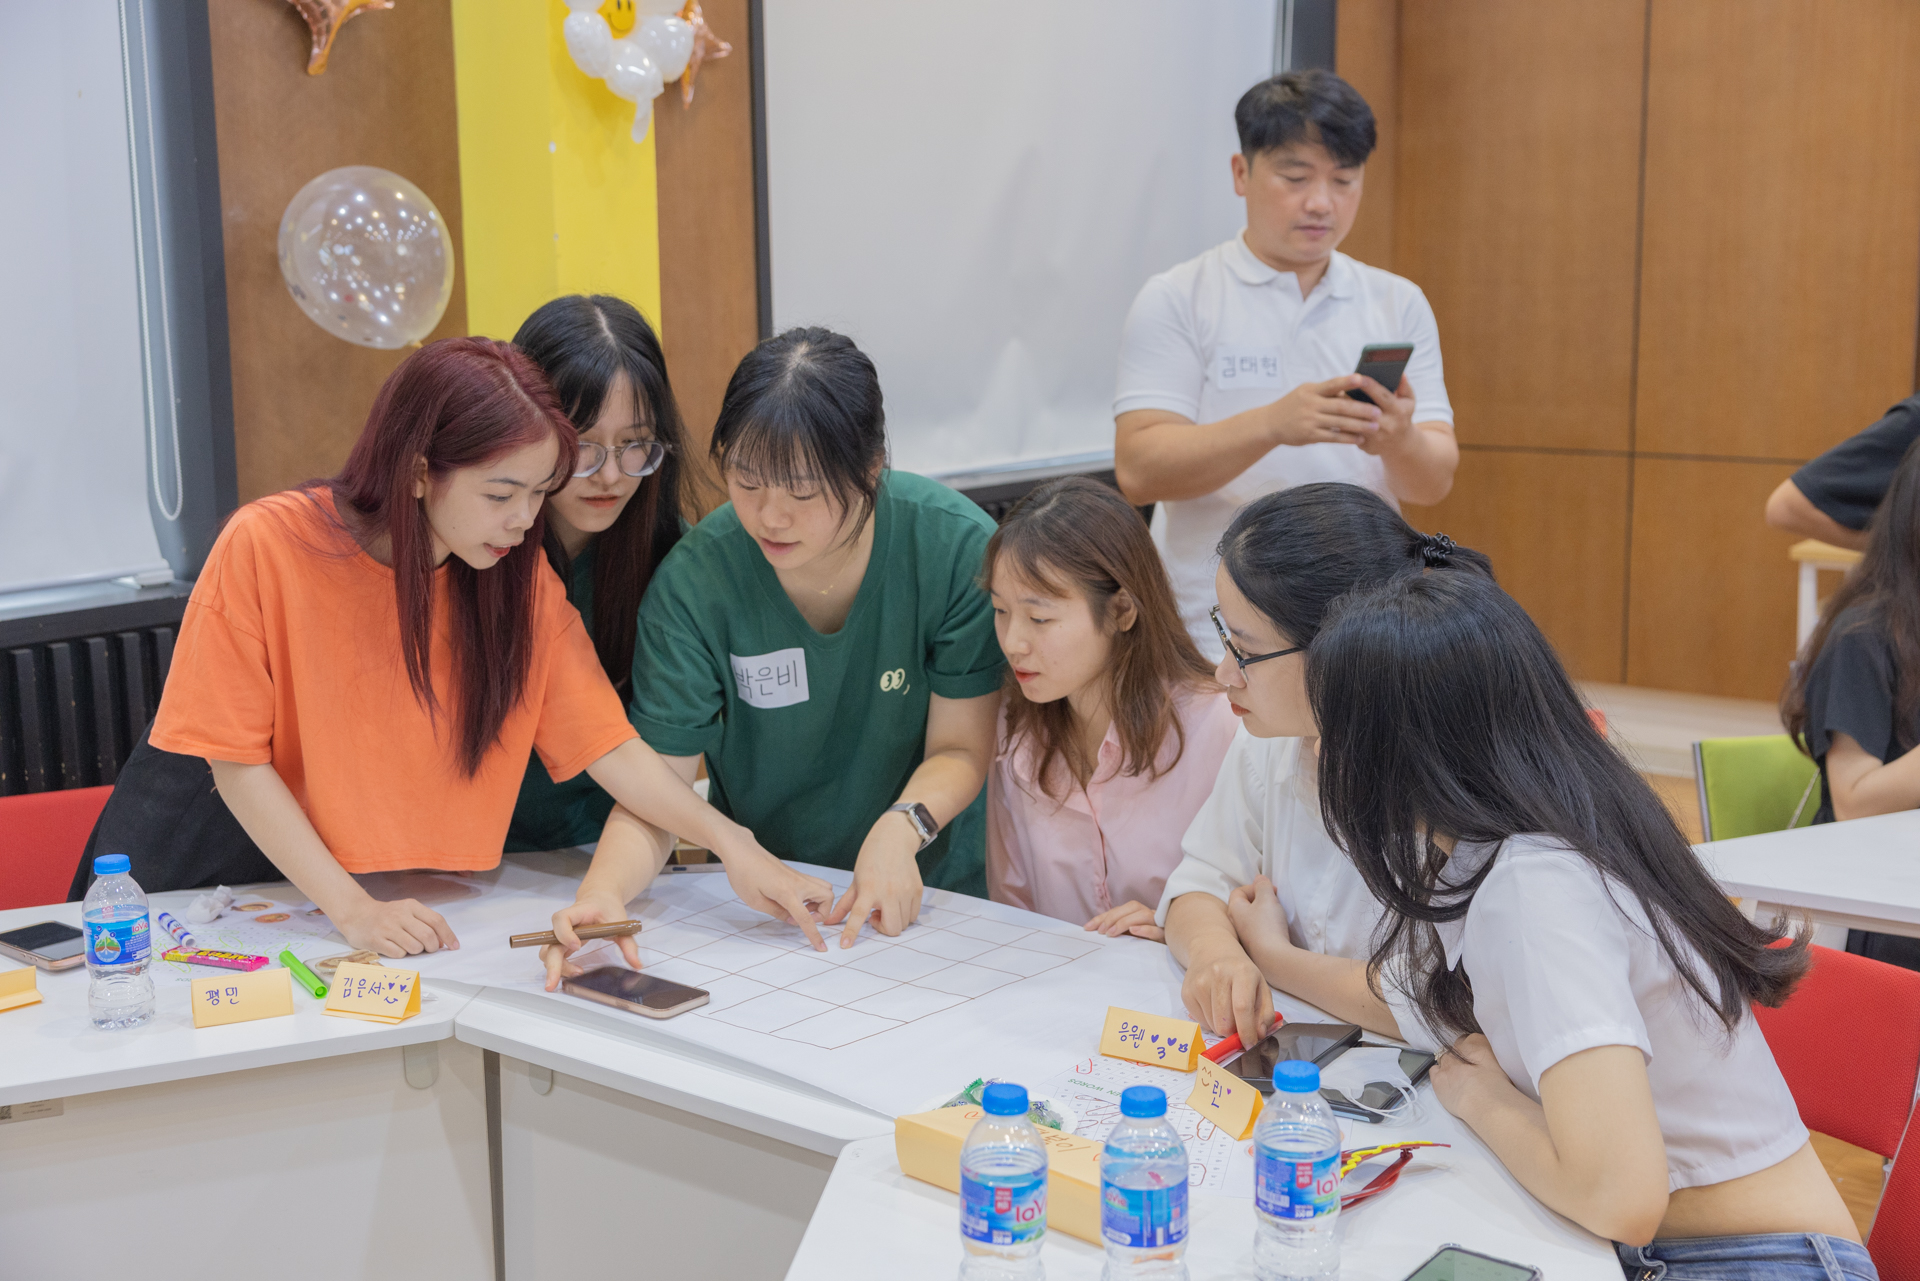 Chia sẻ trải nghiệm cùng Đoàn Tình nguyện Onsa, Hàn Quốc